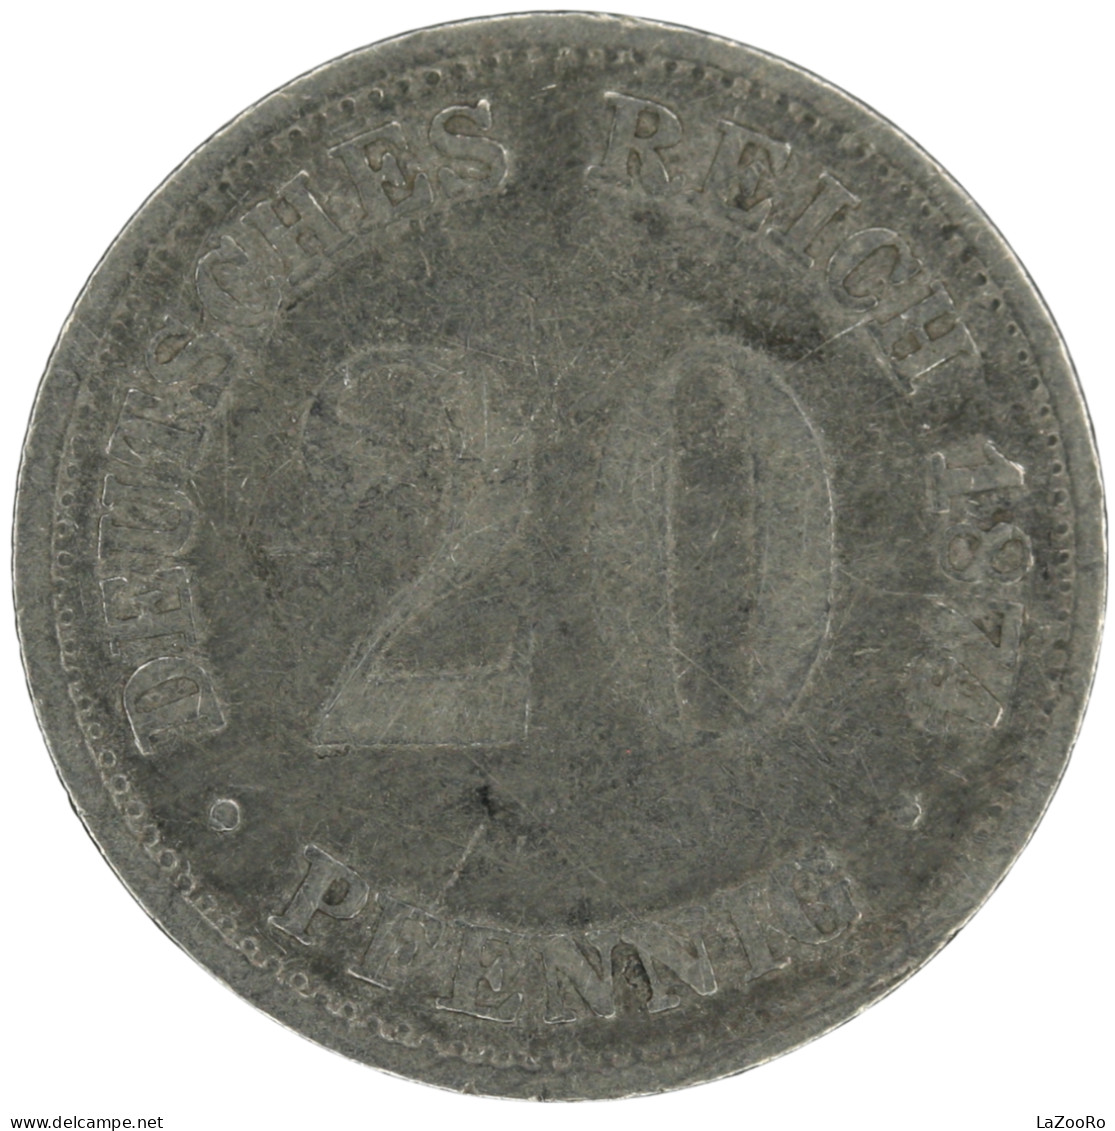 LaZooRo: Germany 20 Pfennig 1874 B VF - Silver - 20 Pfennig